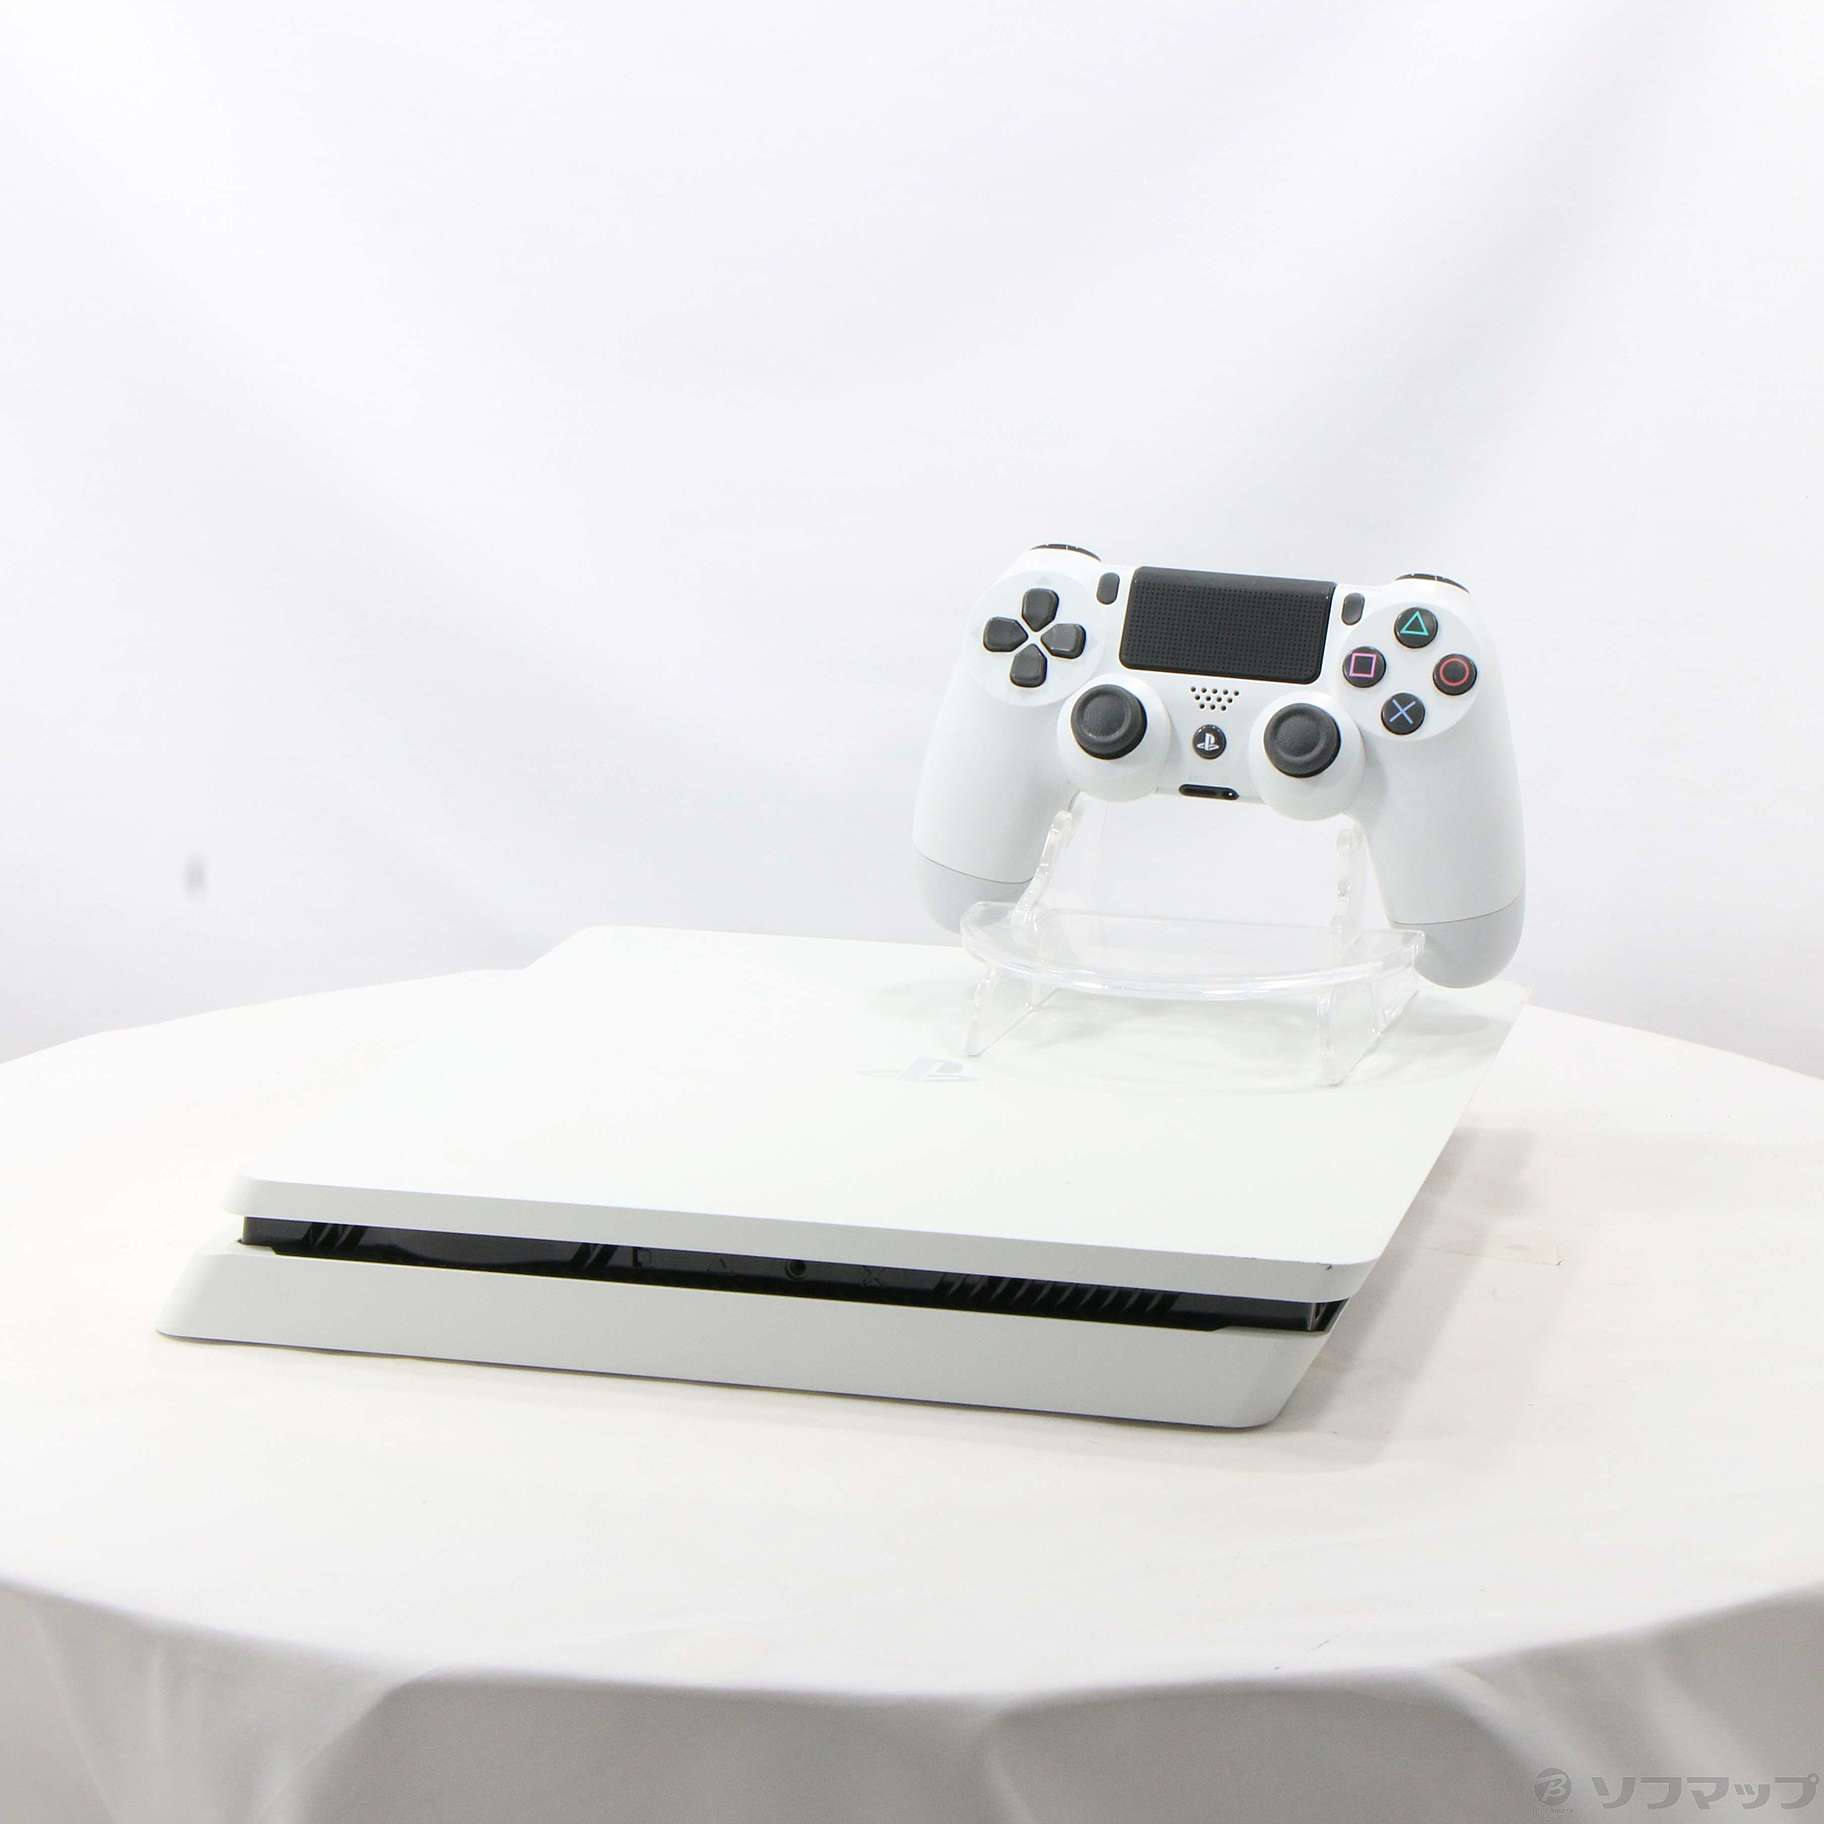 中古】PlayStation 4 グレイシャー・ホワイト 500GB [2133047960018